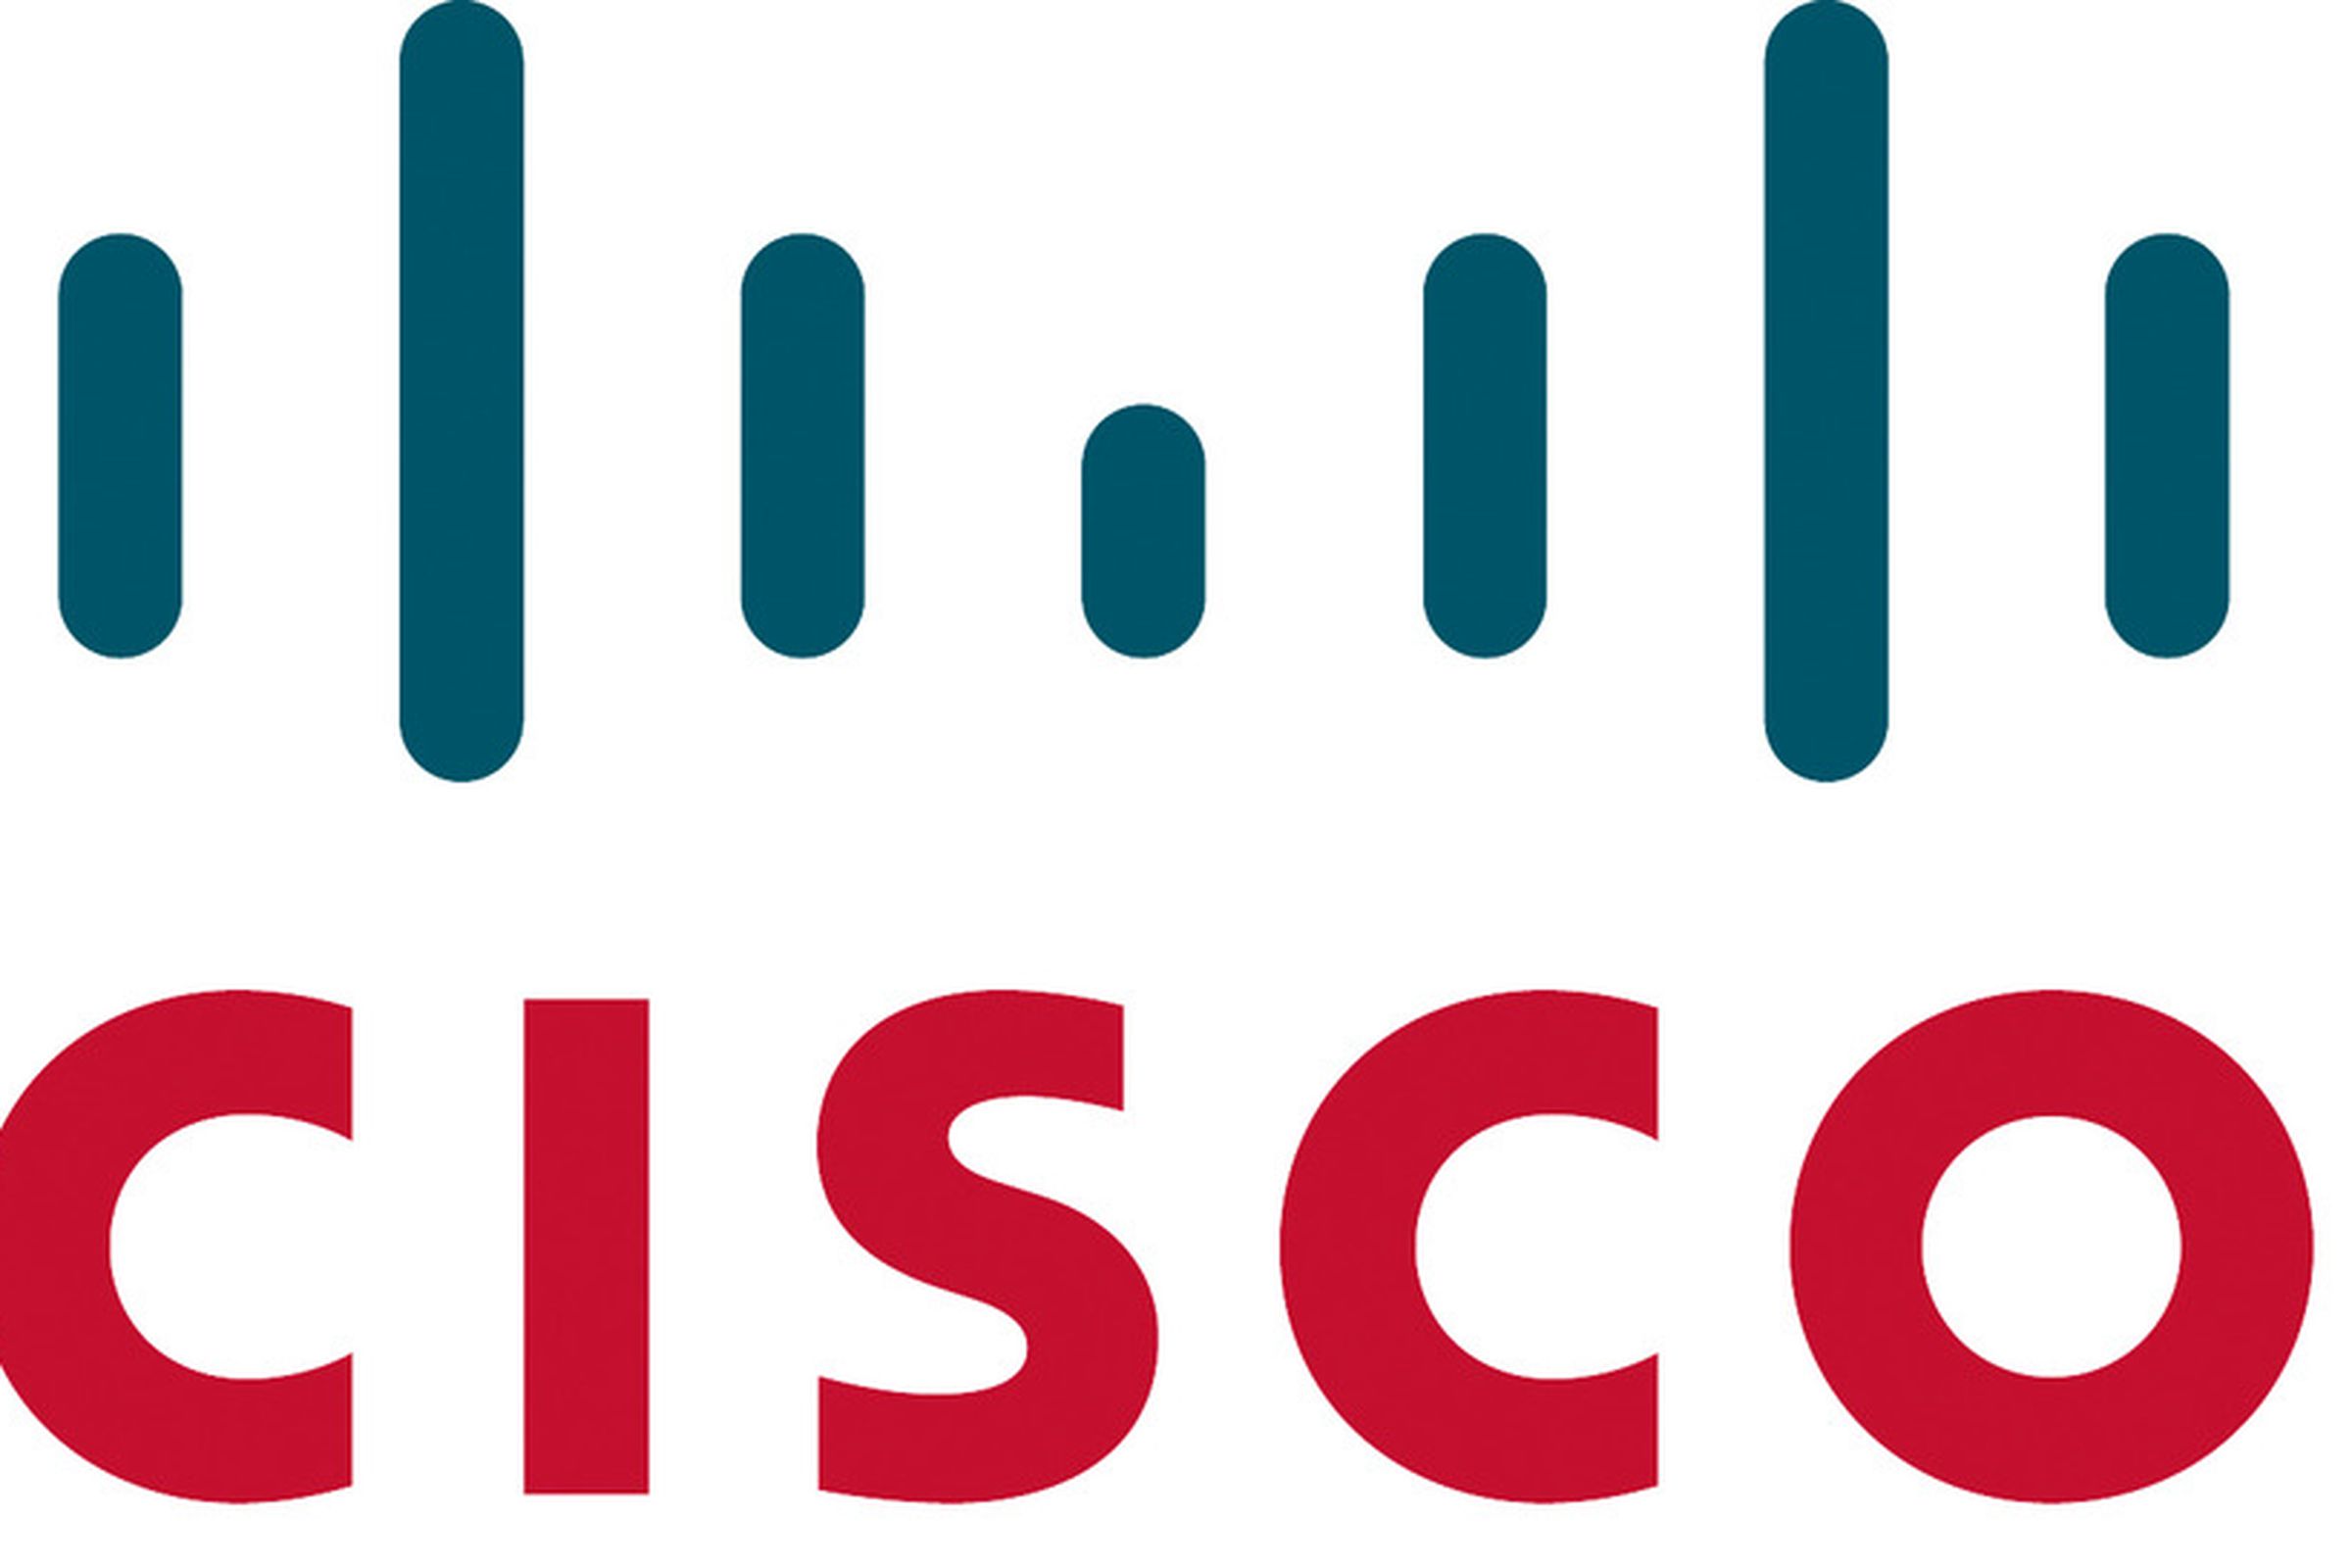 Cisco logo symbol